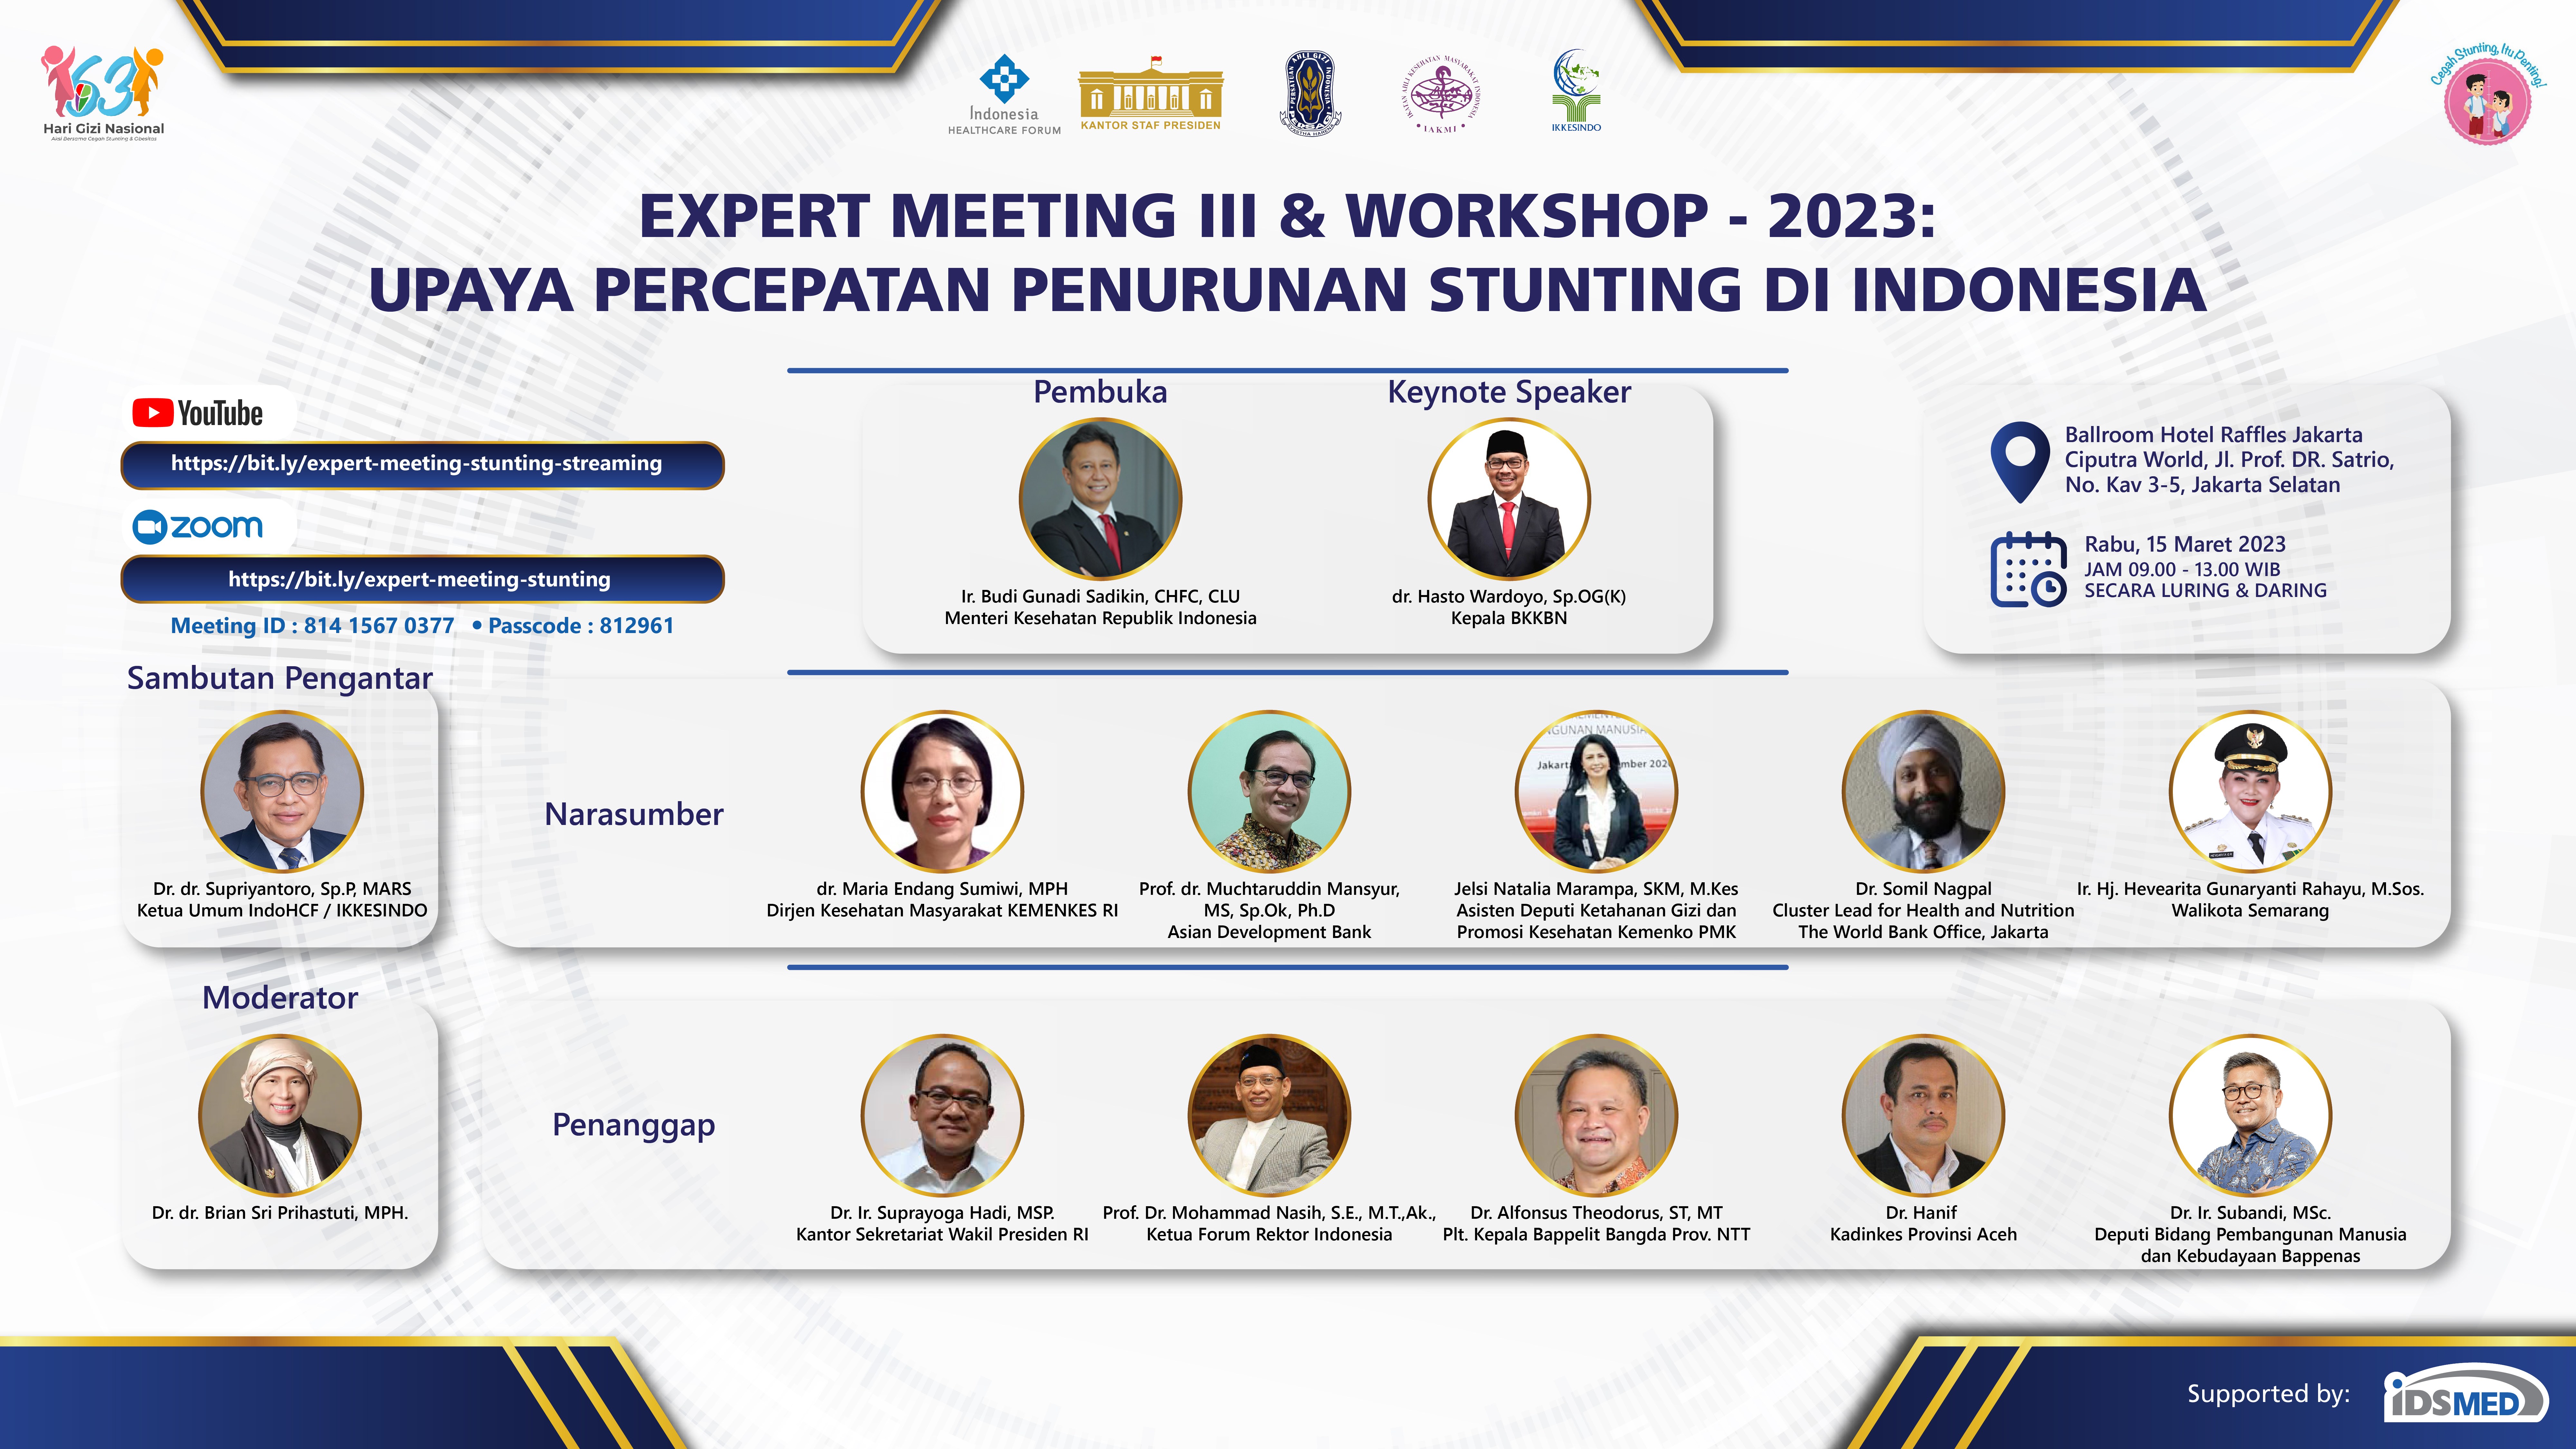 EXPERT MEETING III & WORKSHOP TENTANG UPAYA PERCEPATAN PENURUNAN STUNTING DI INDONESIA   15 MARCH 2023